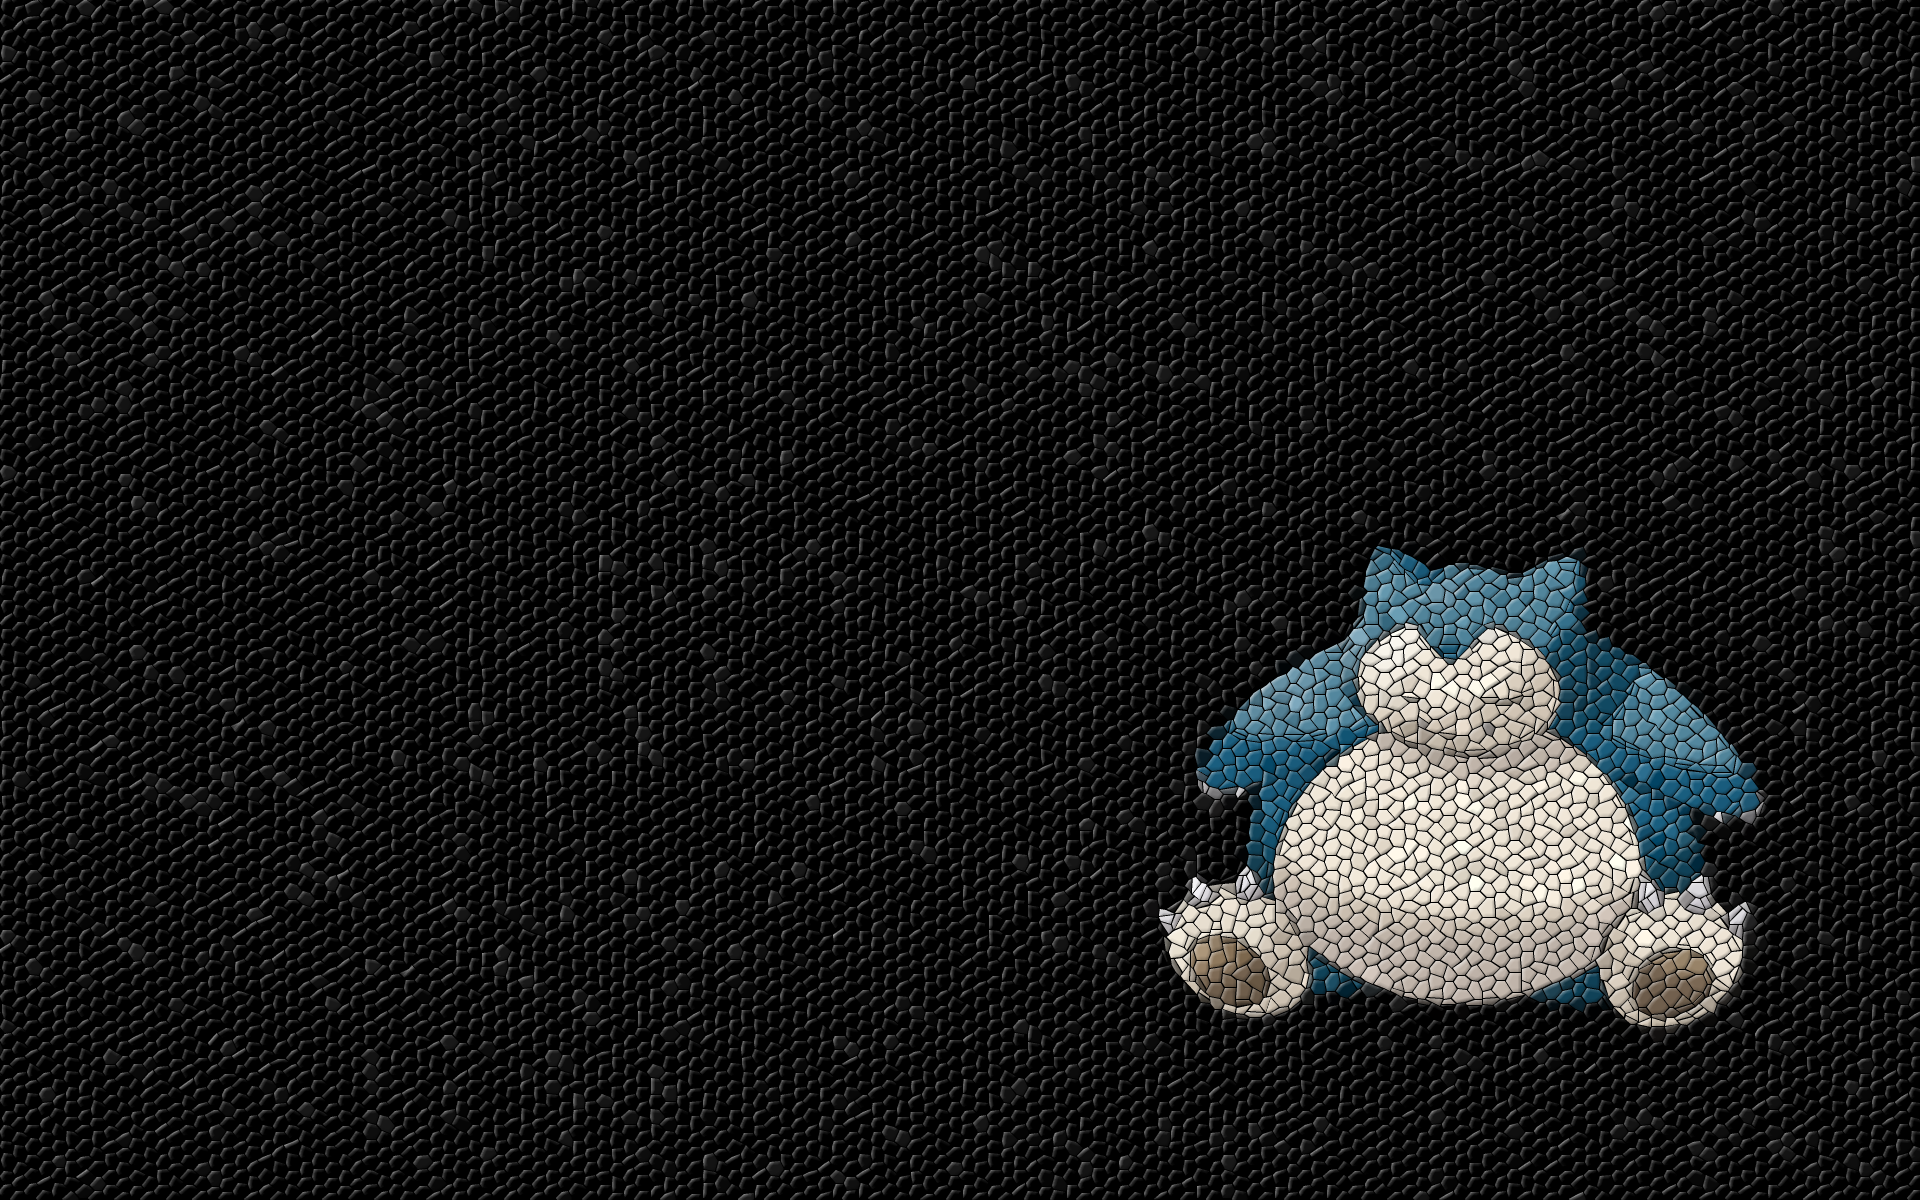 Pokemon, mosaic, Snorlax - desktop wallpaper